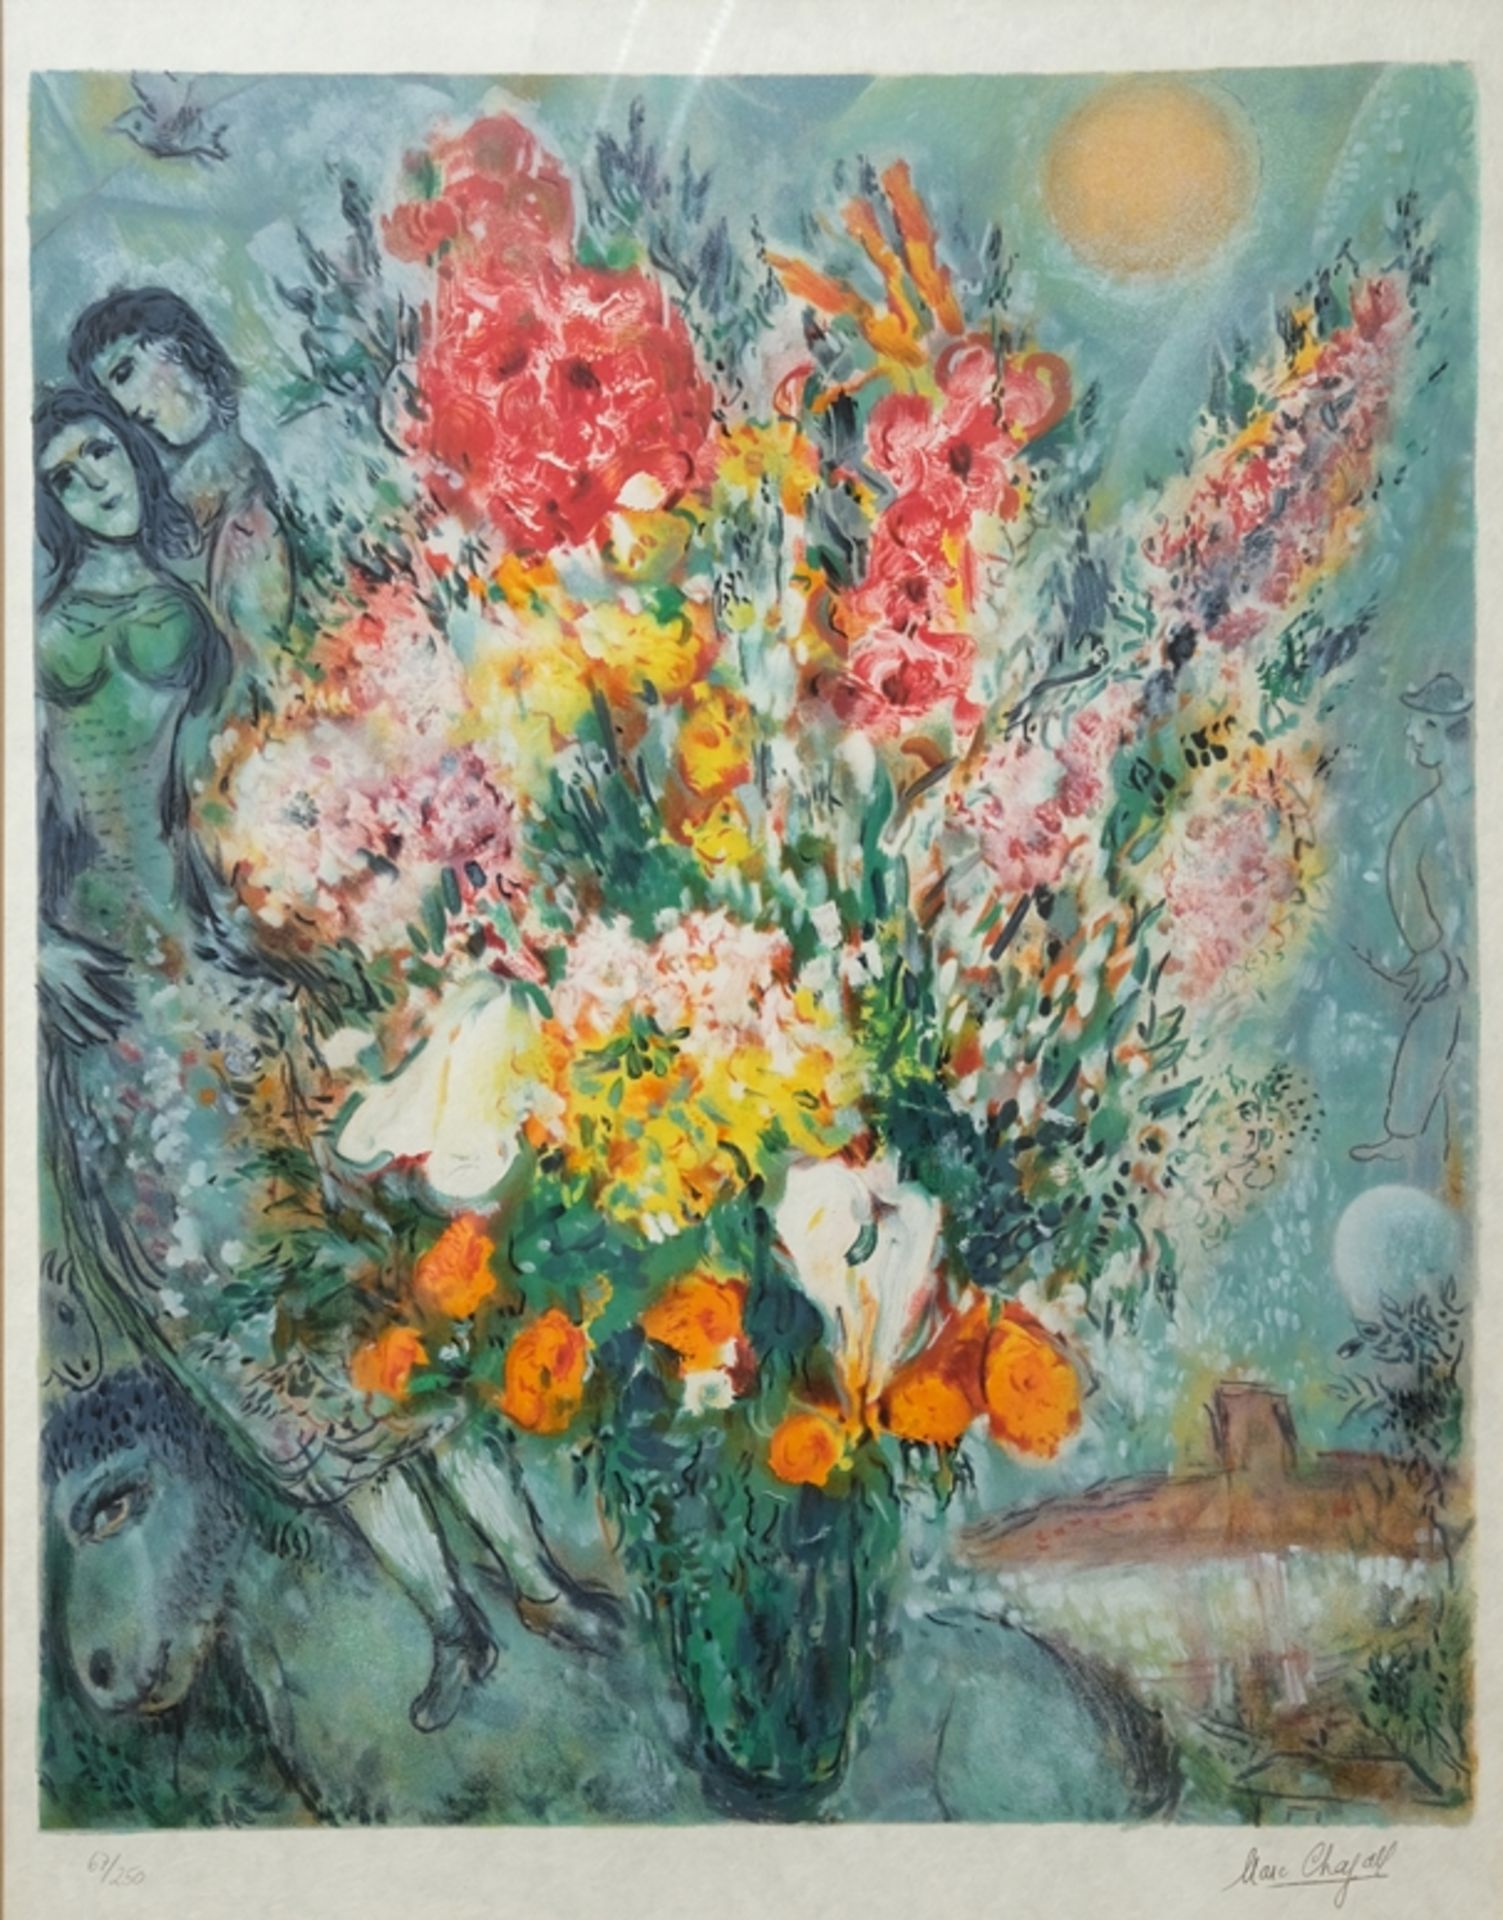 Chagall, Marc (1887-1985) "Bouquet de Fleurs", no year, colour lithograph on Japanese paper. 